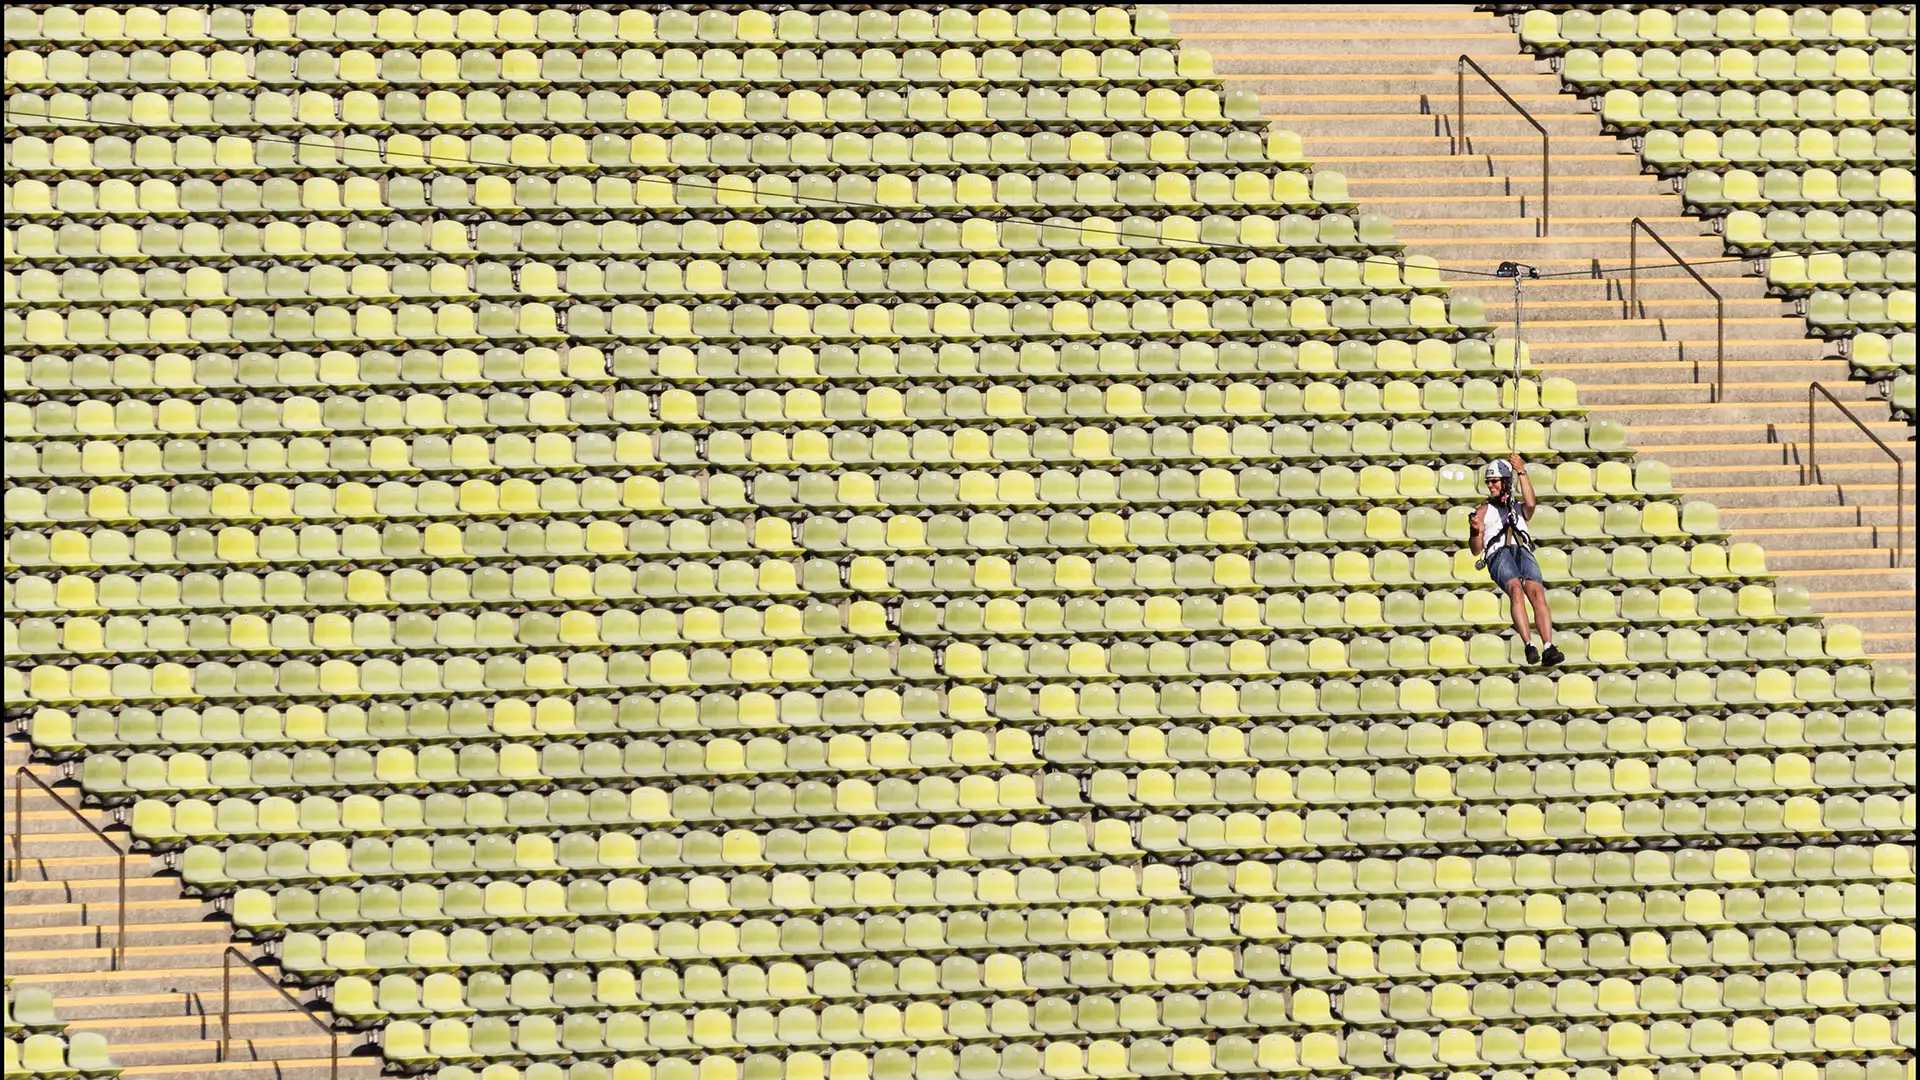 Farbfoto: Privates Event einer Sportlerin, die an einem quer durch das Olympiastadion gespannten Seil an Rollen auf dem Seil von einer Seite des Stadions auf die andere Seite gleitet. Im Hintergrund die leeren grünen Schalensitze.